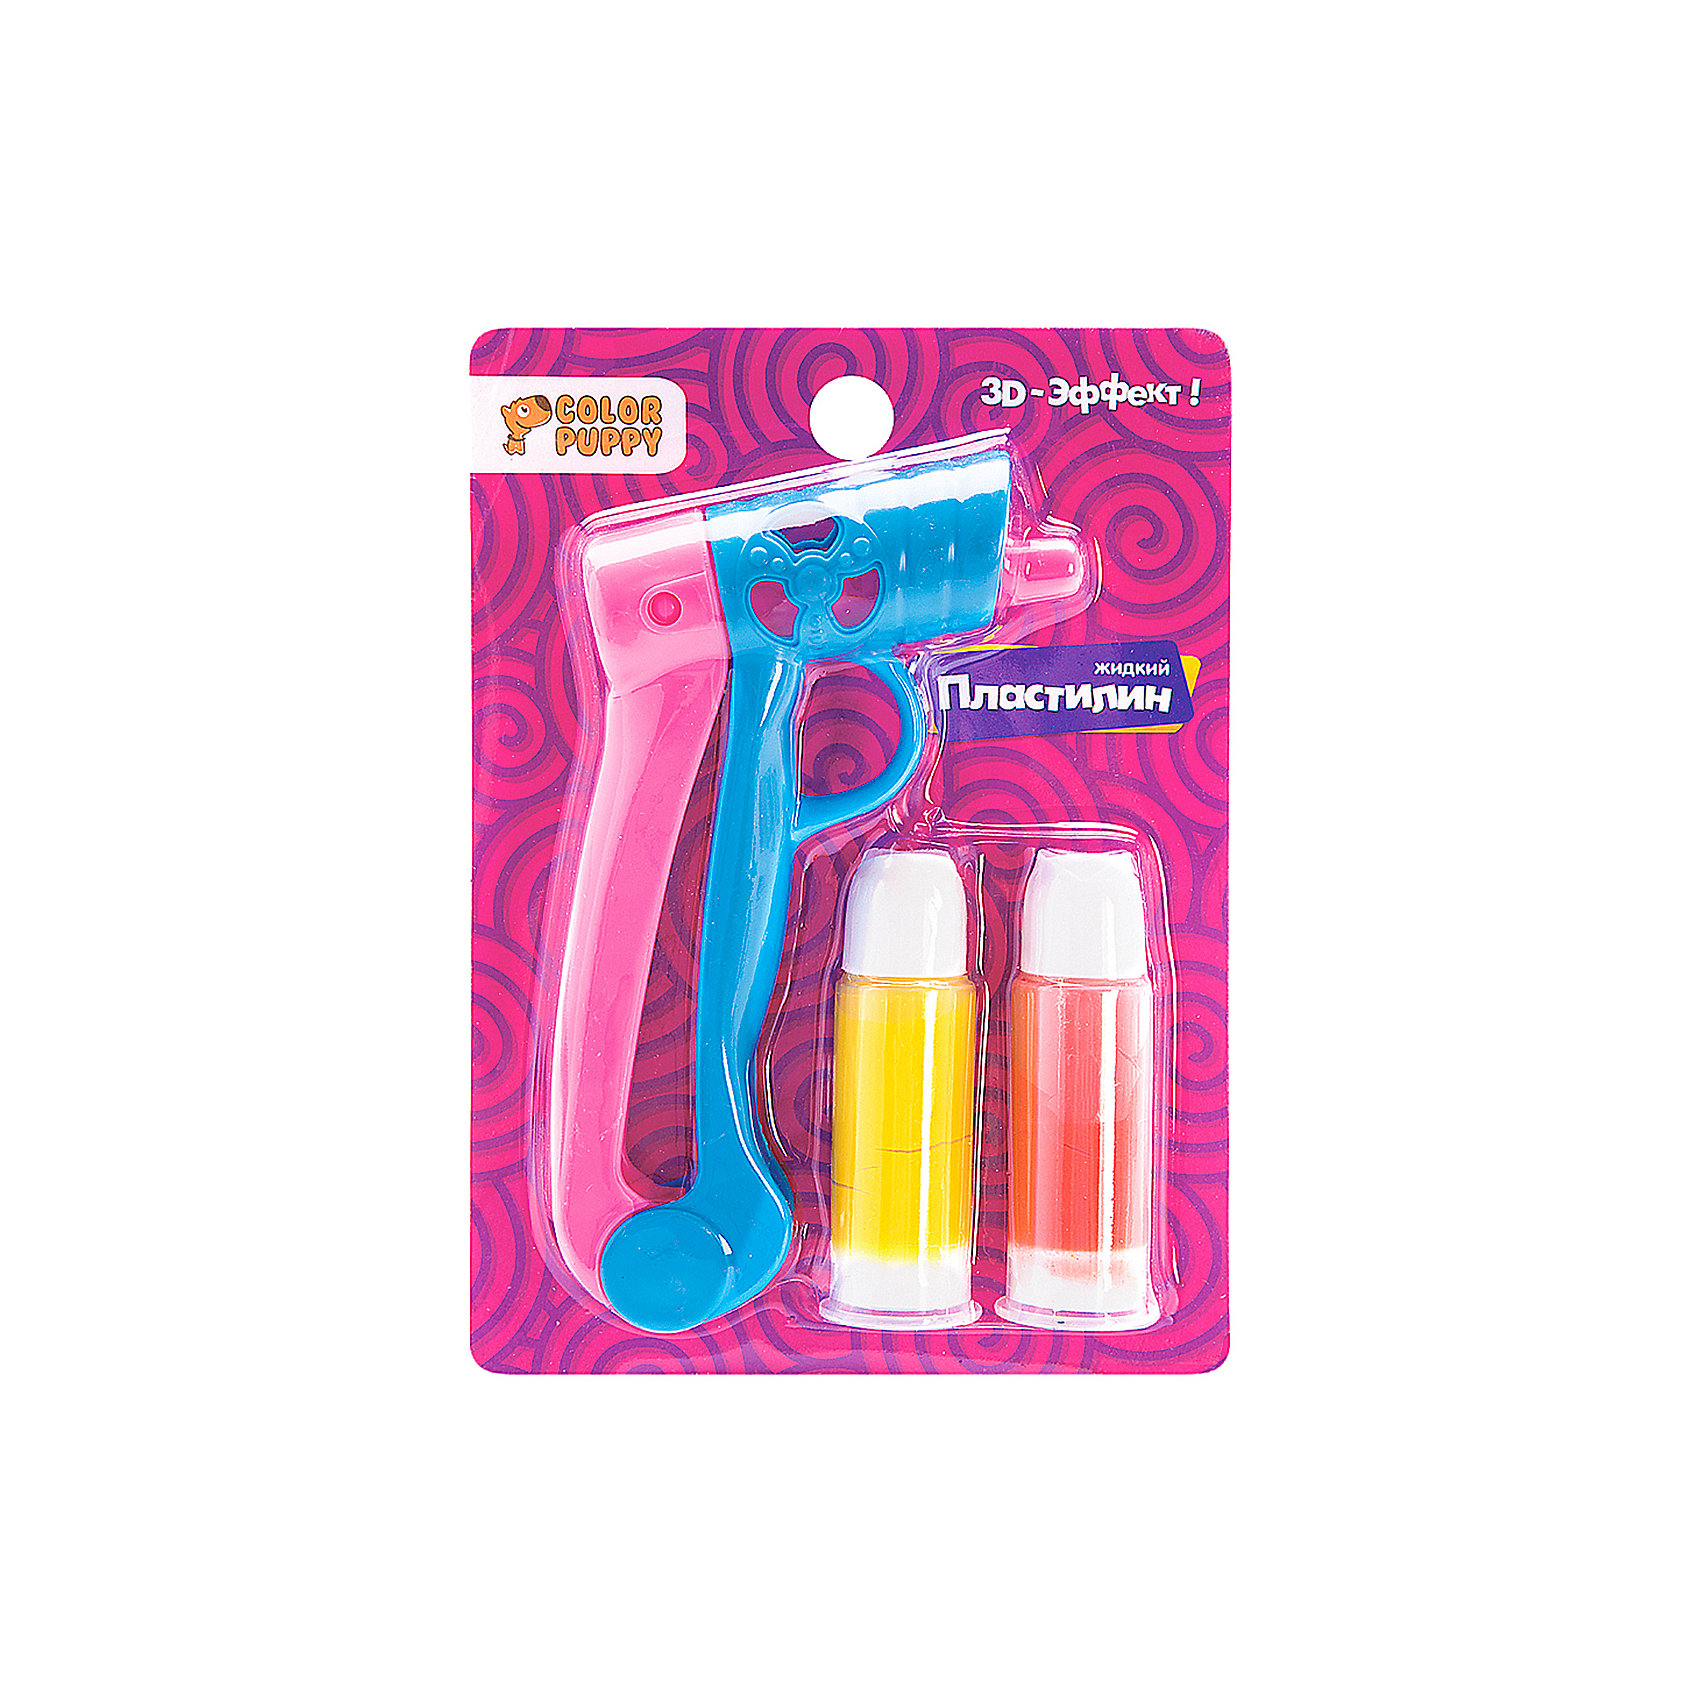 Набор для лепки Color Puppy арт 63935. Пластилин Color Puppy 2 цвета с пистолетом. Лента набор с жидким пластилином.